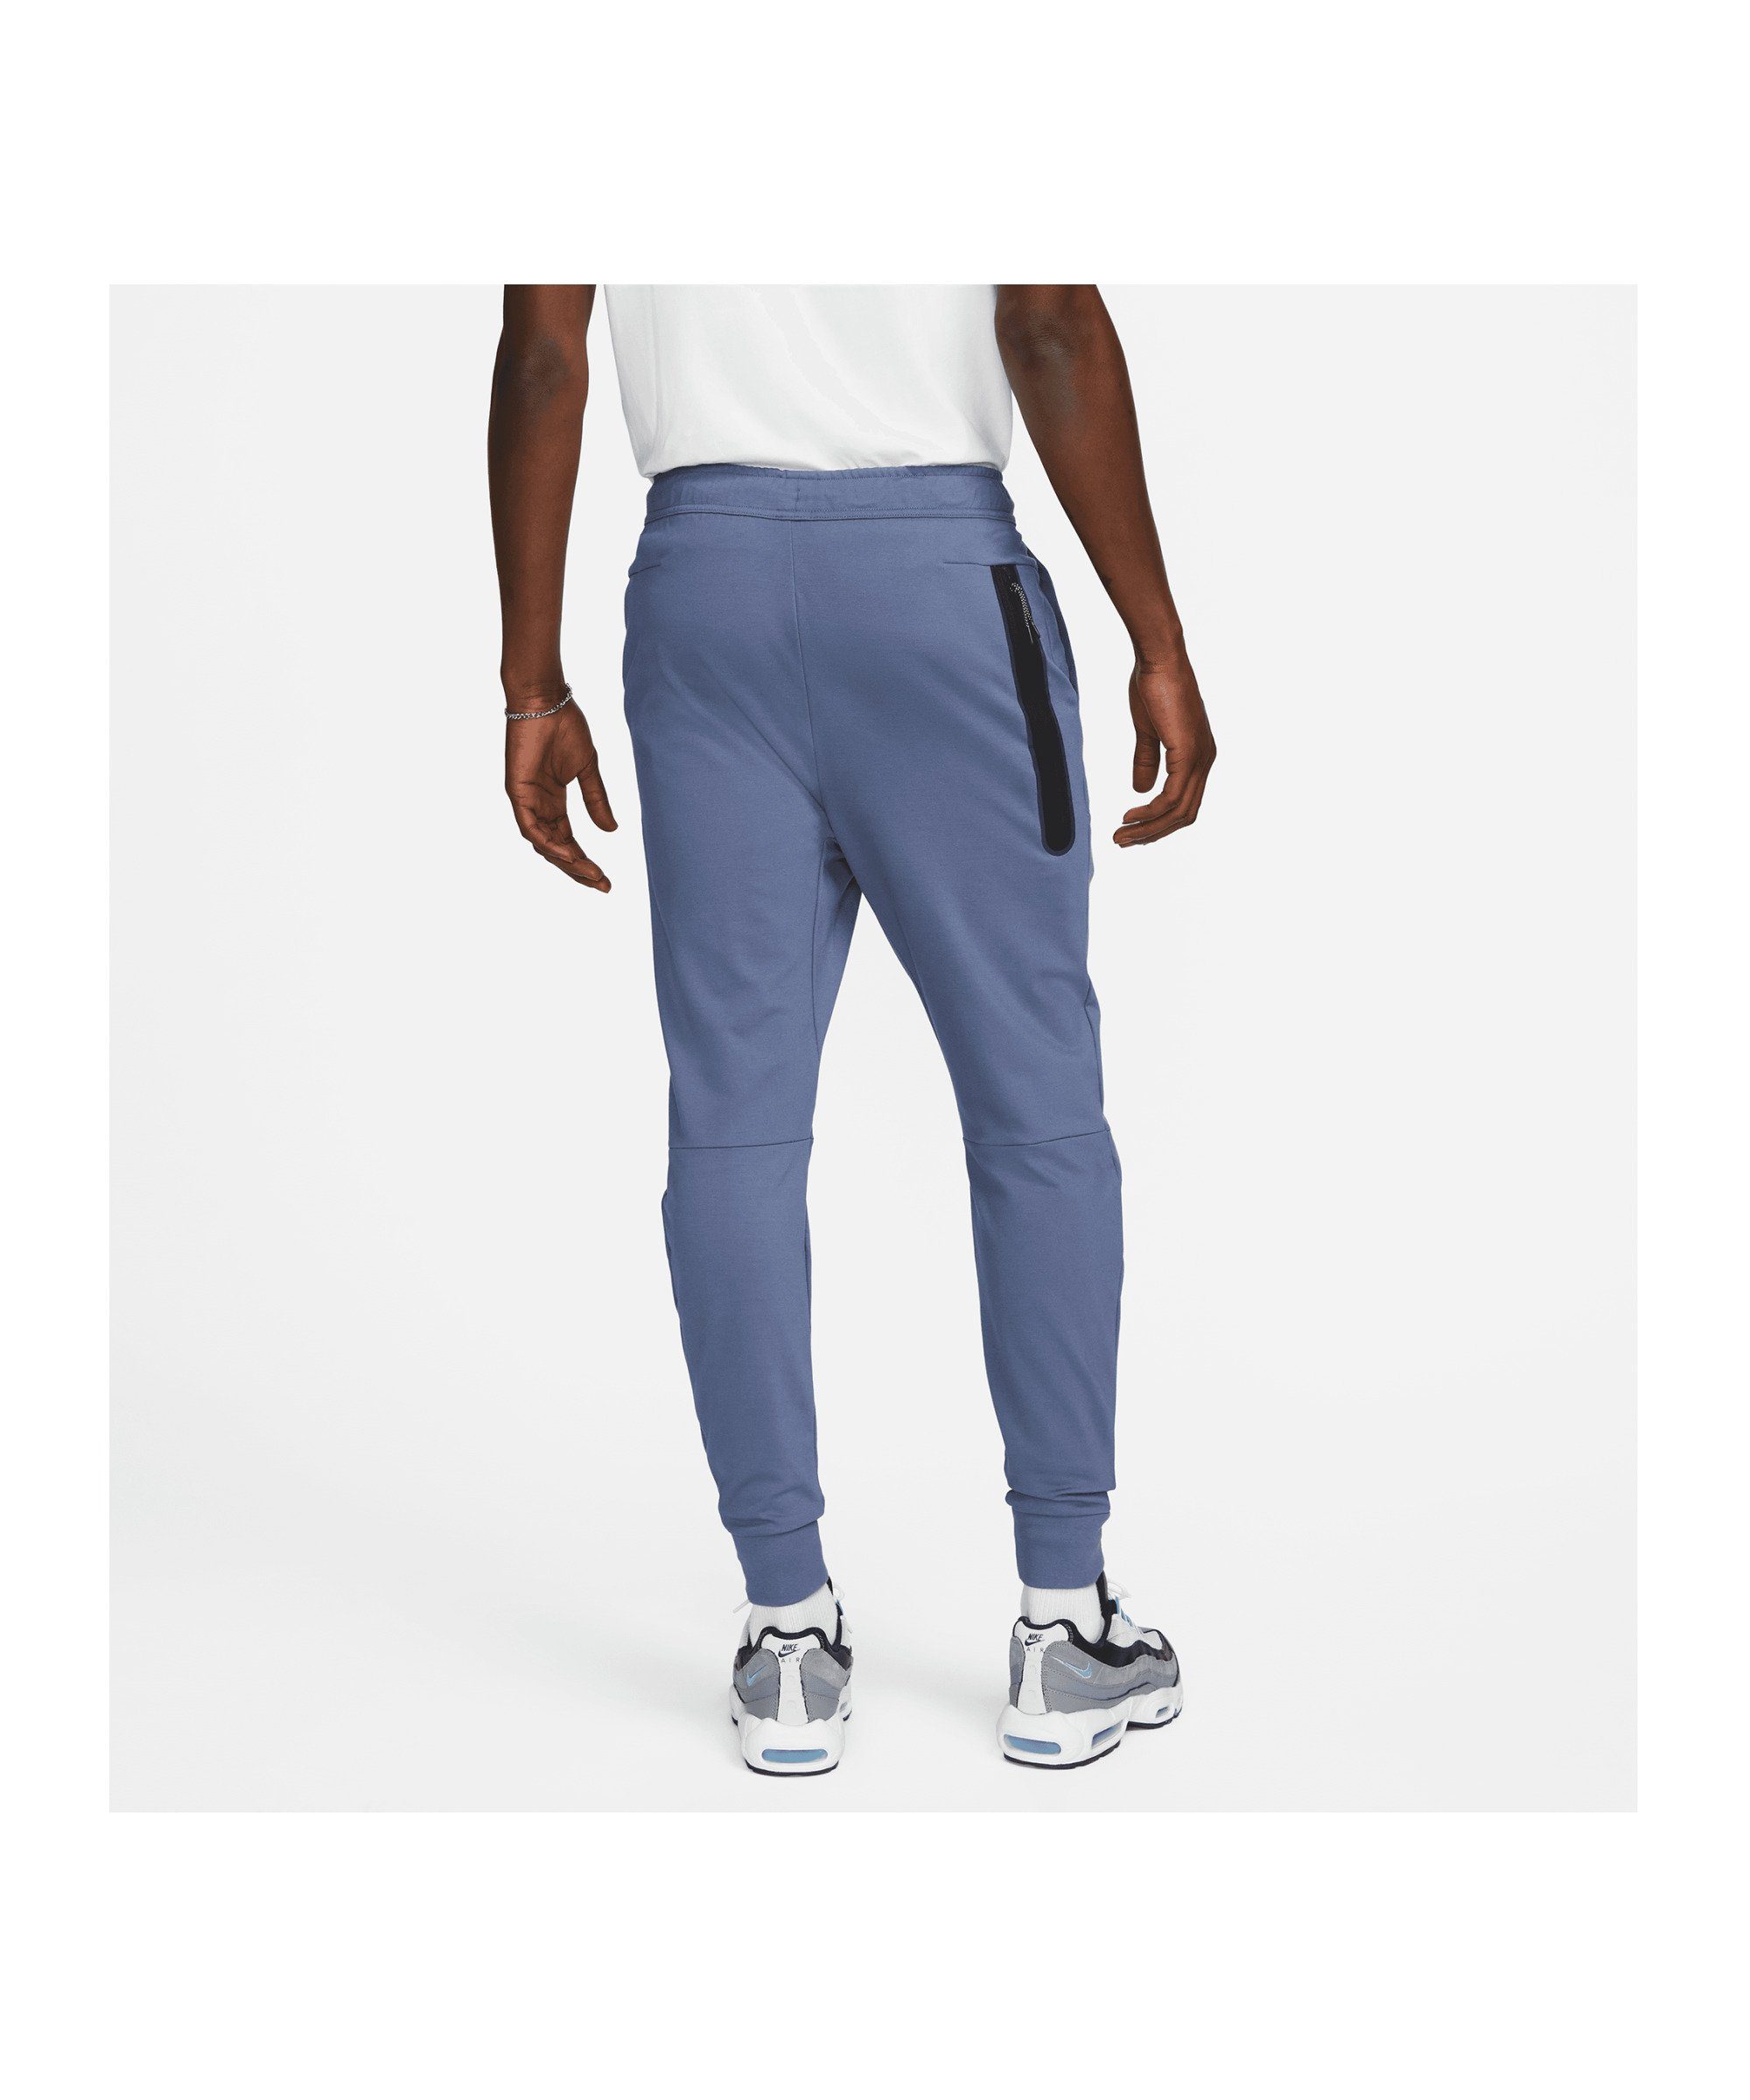 Essentials Jogginghose Nike blau Sportswear Tech Jogginghose